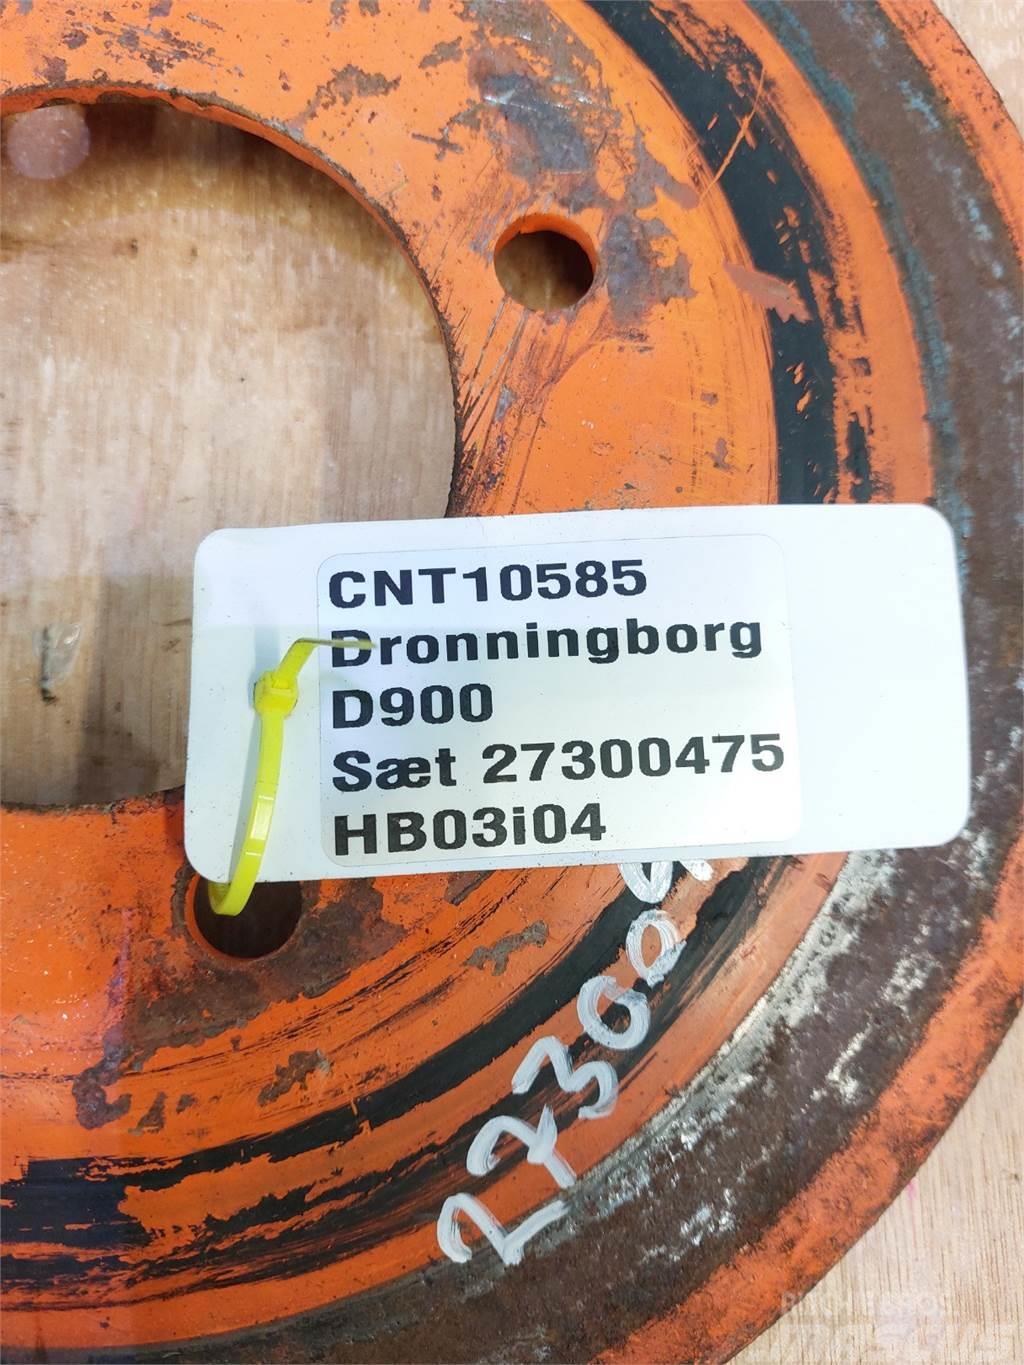 Dronningborg D900 Muut maatalouskoneet